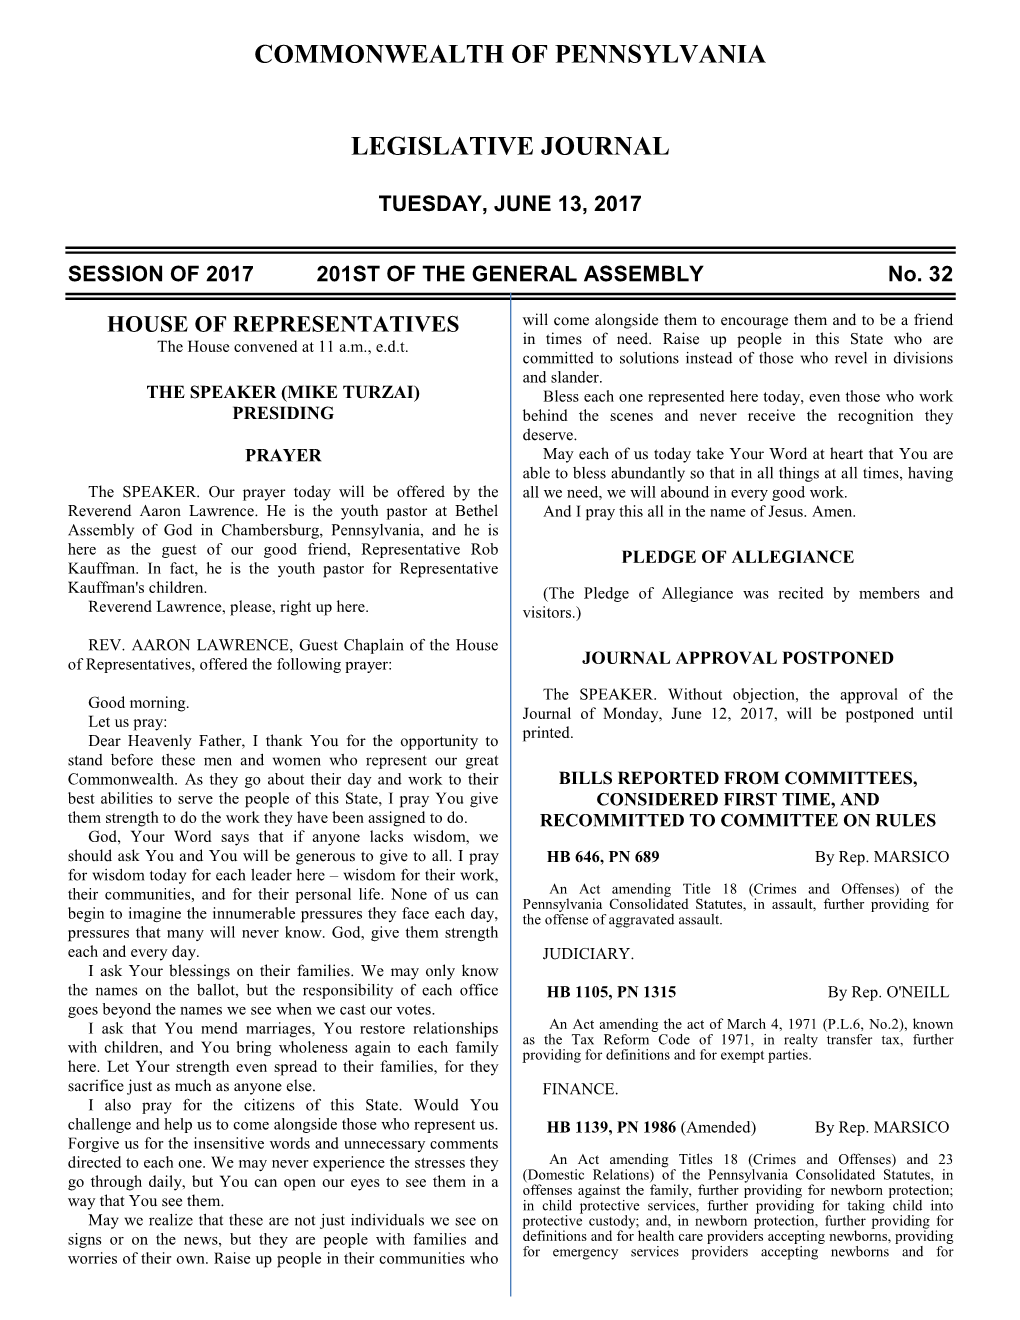 1042 Legislative Journal—House June 13